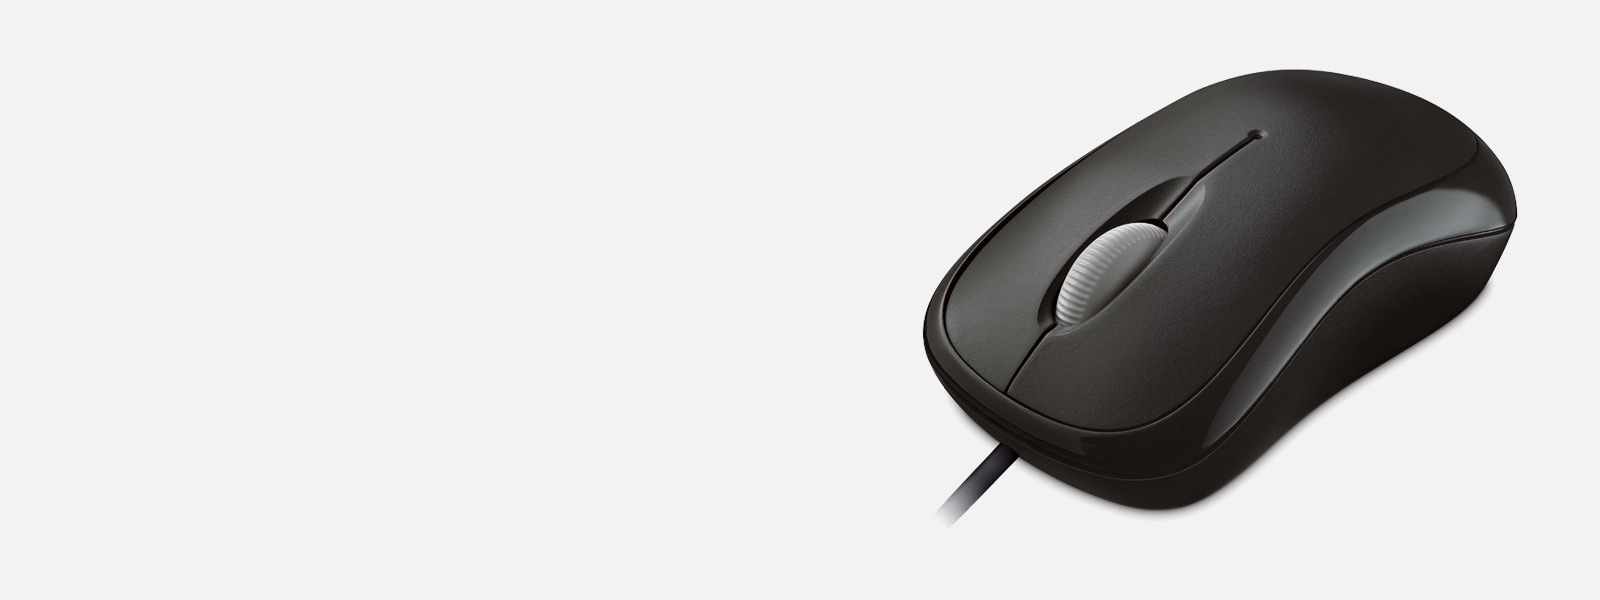 黑色 Microsoft Basic Optical Mouse